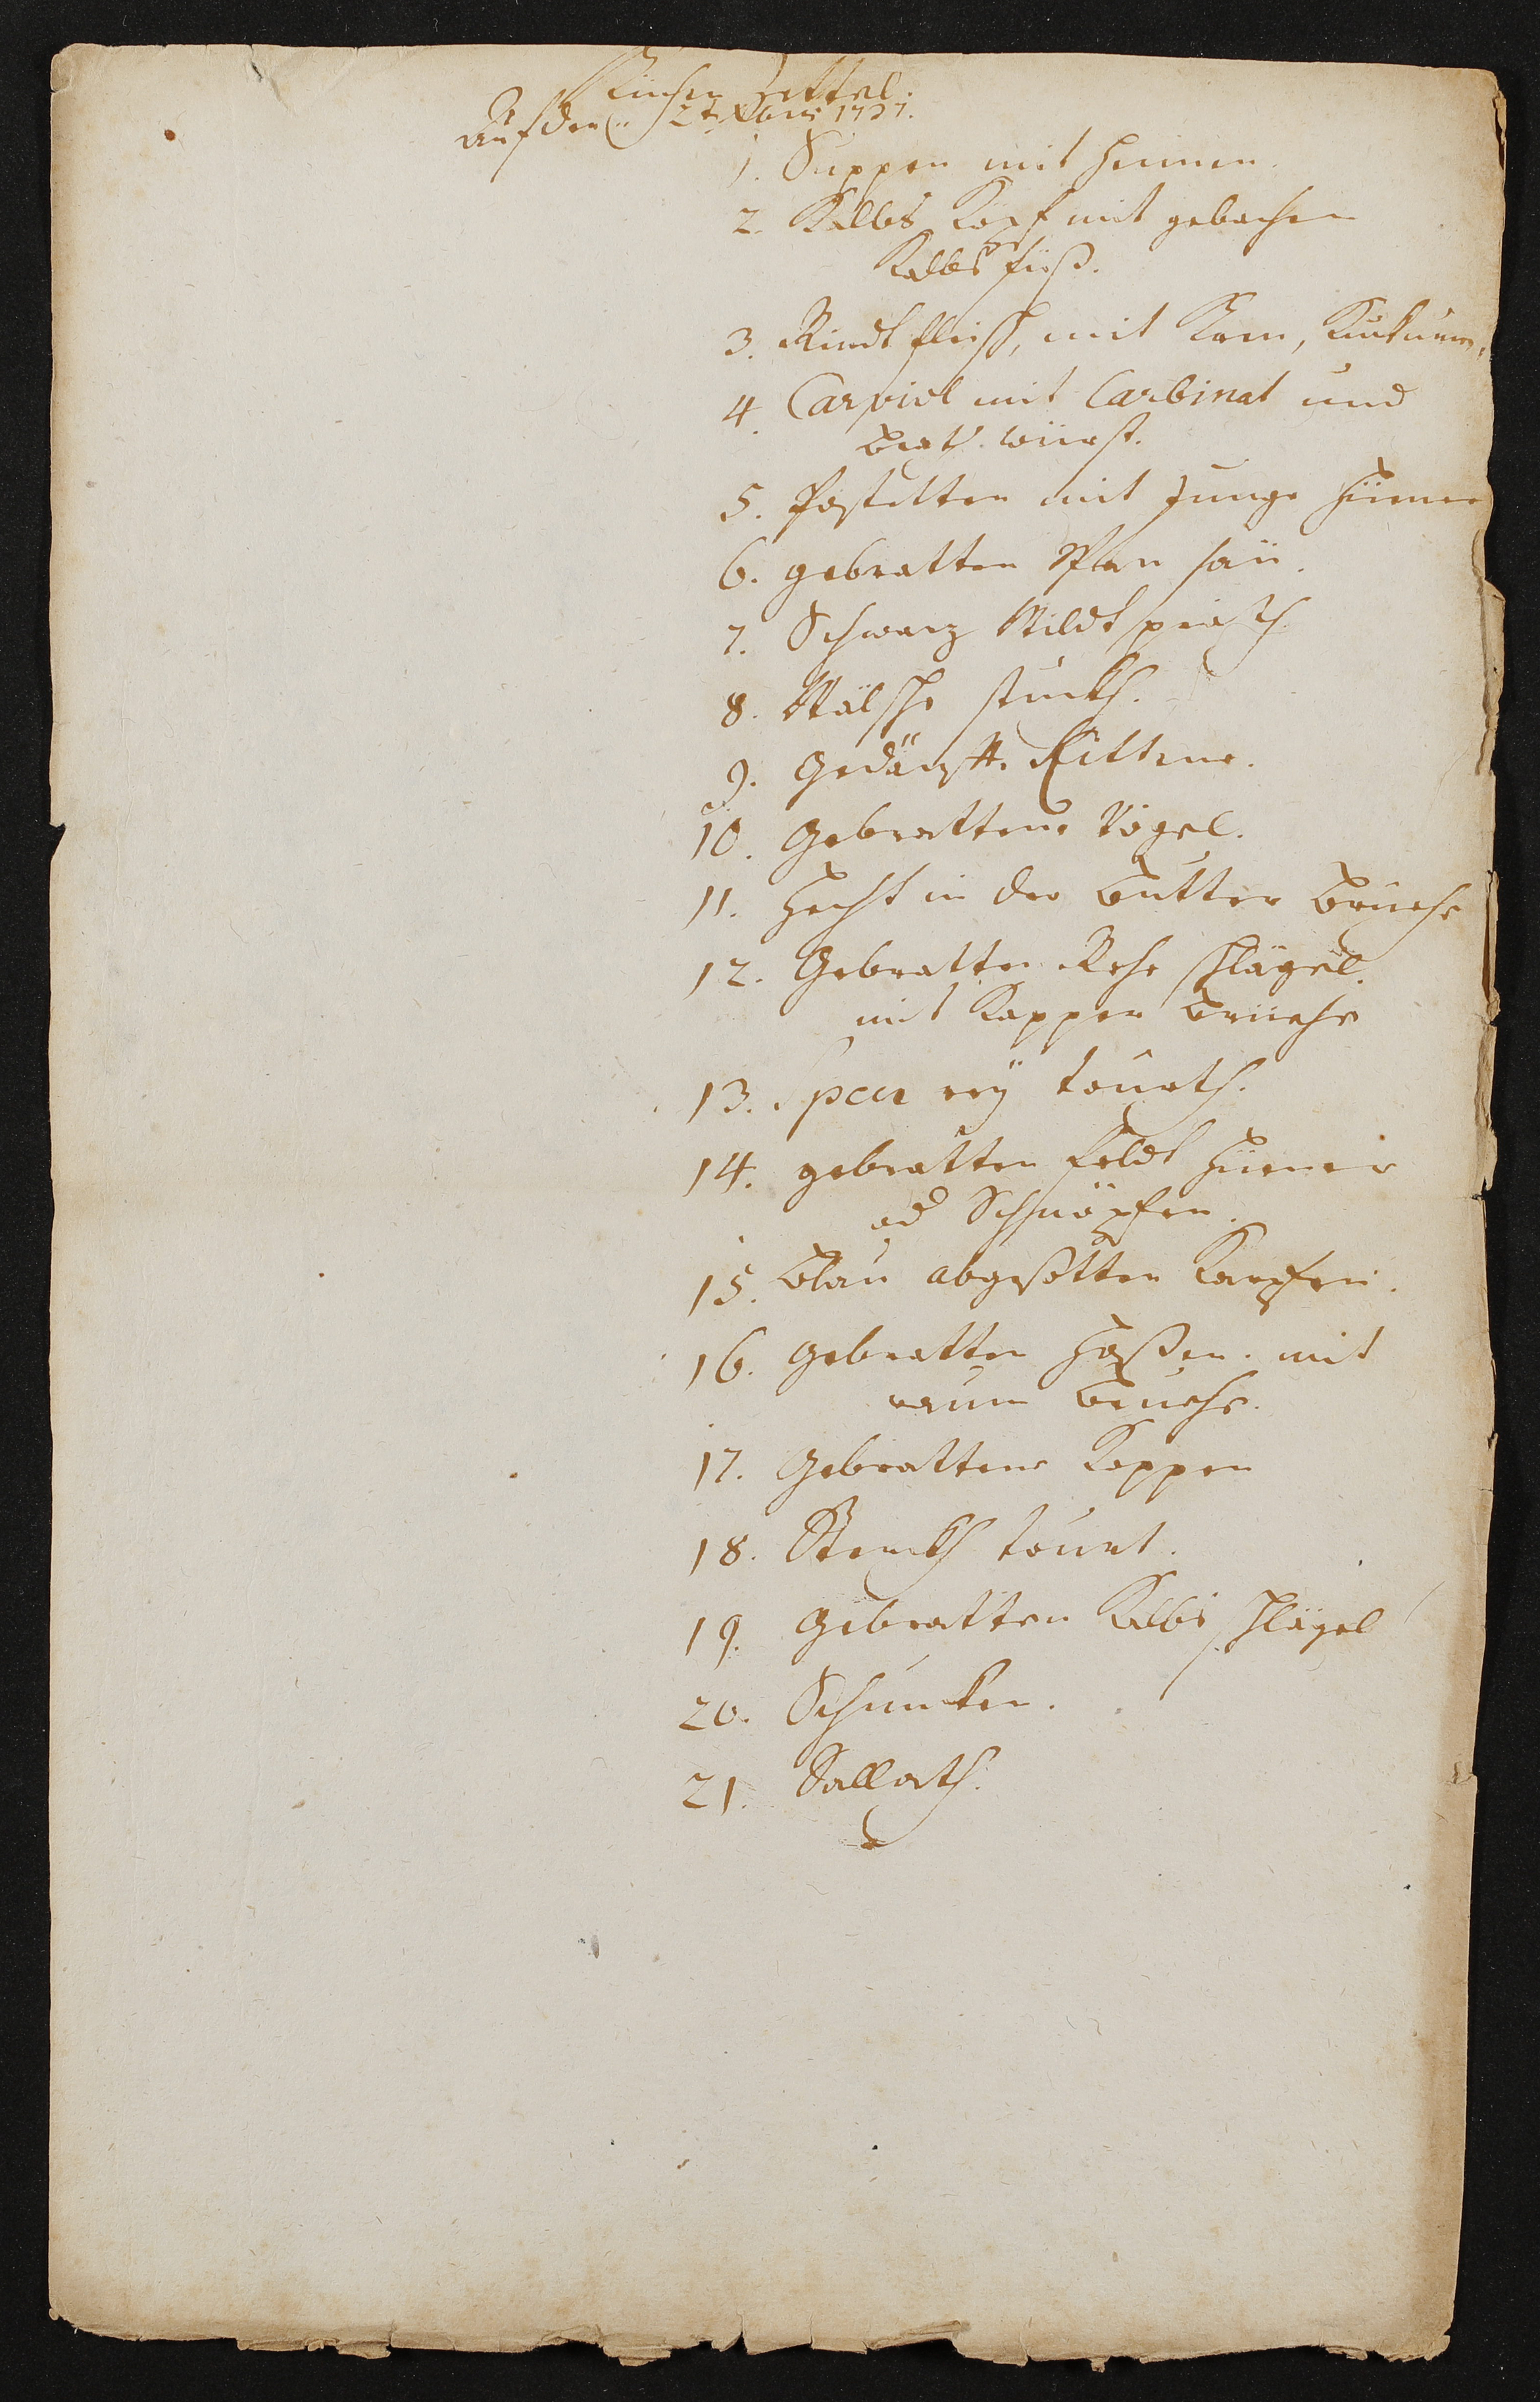 Speisenfolge der Gerichtsmahlzeit vom 2. Dezember 1732